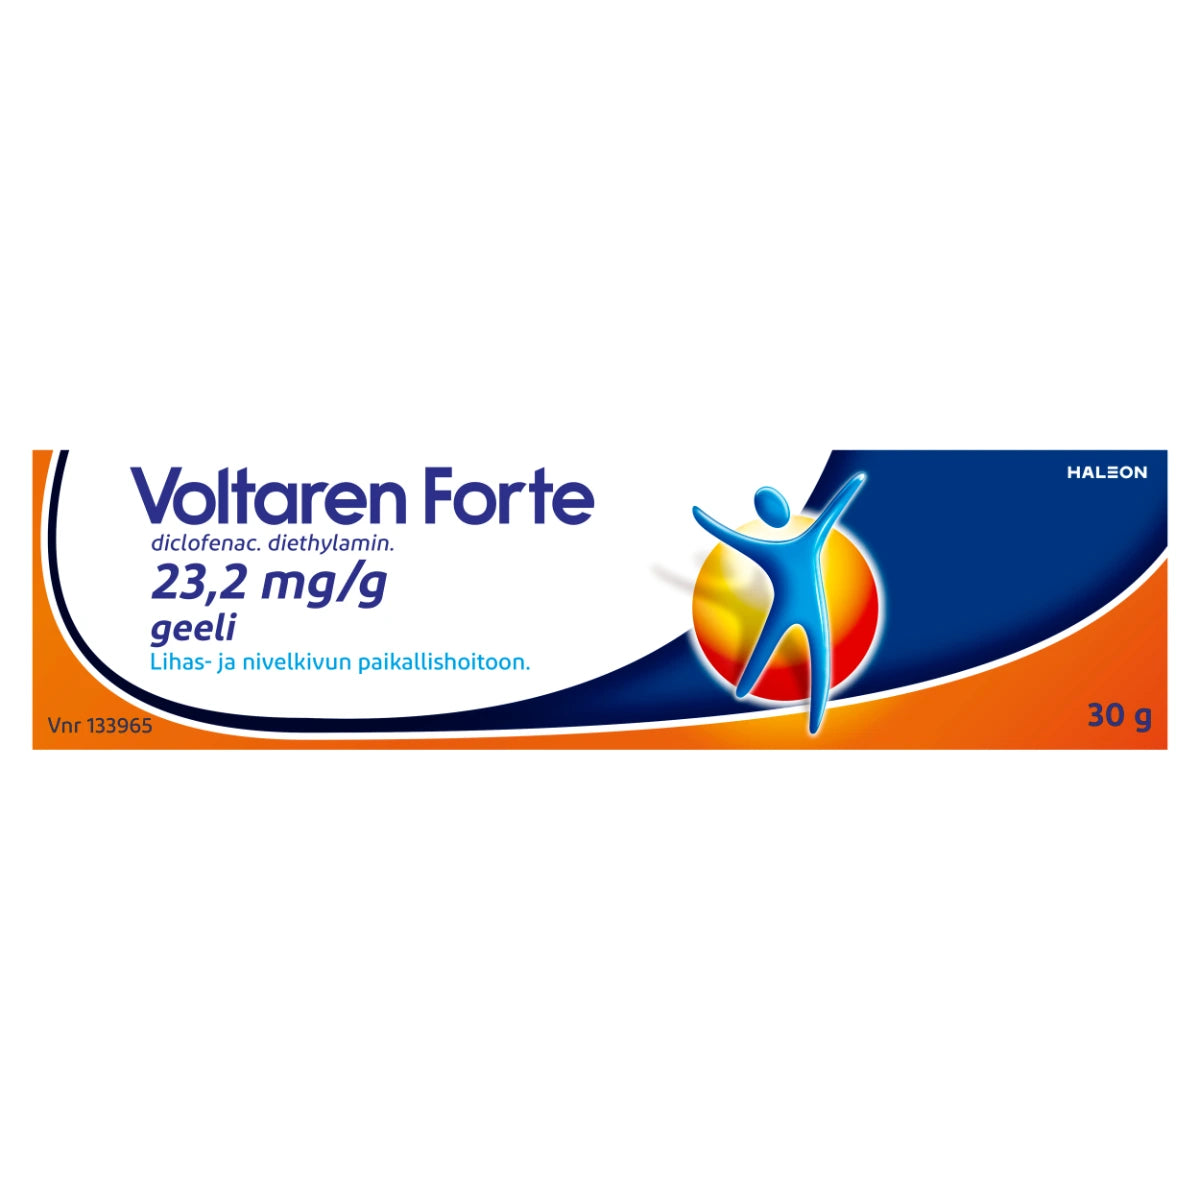 VOLTAREN FORTE 23,2 mg/g geeli 30 g lihas- ja nivelkivun paikallishoitoon